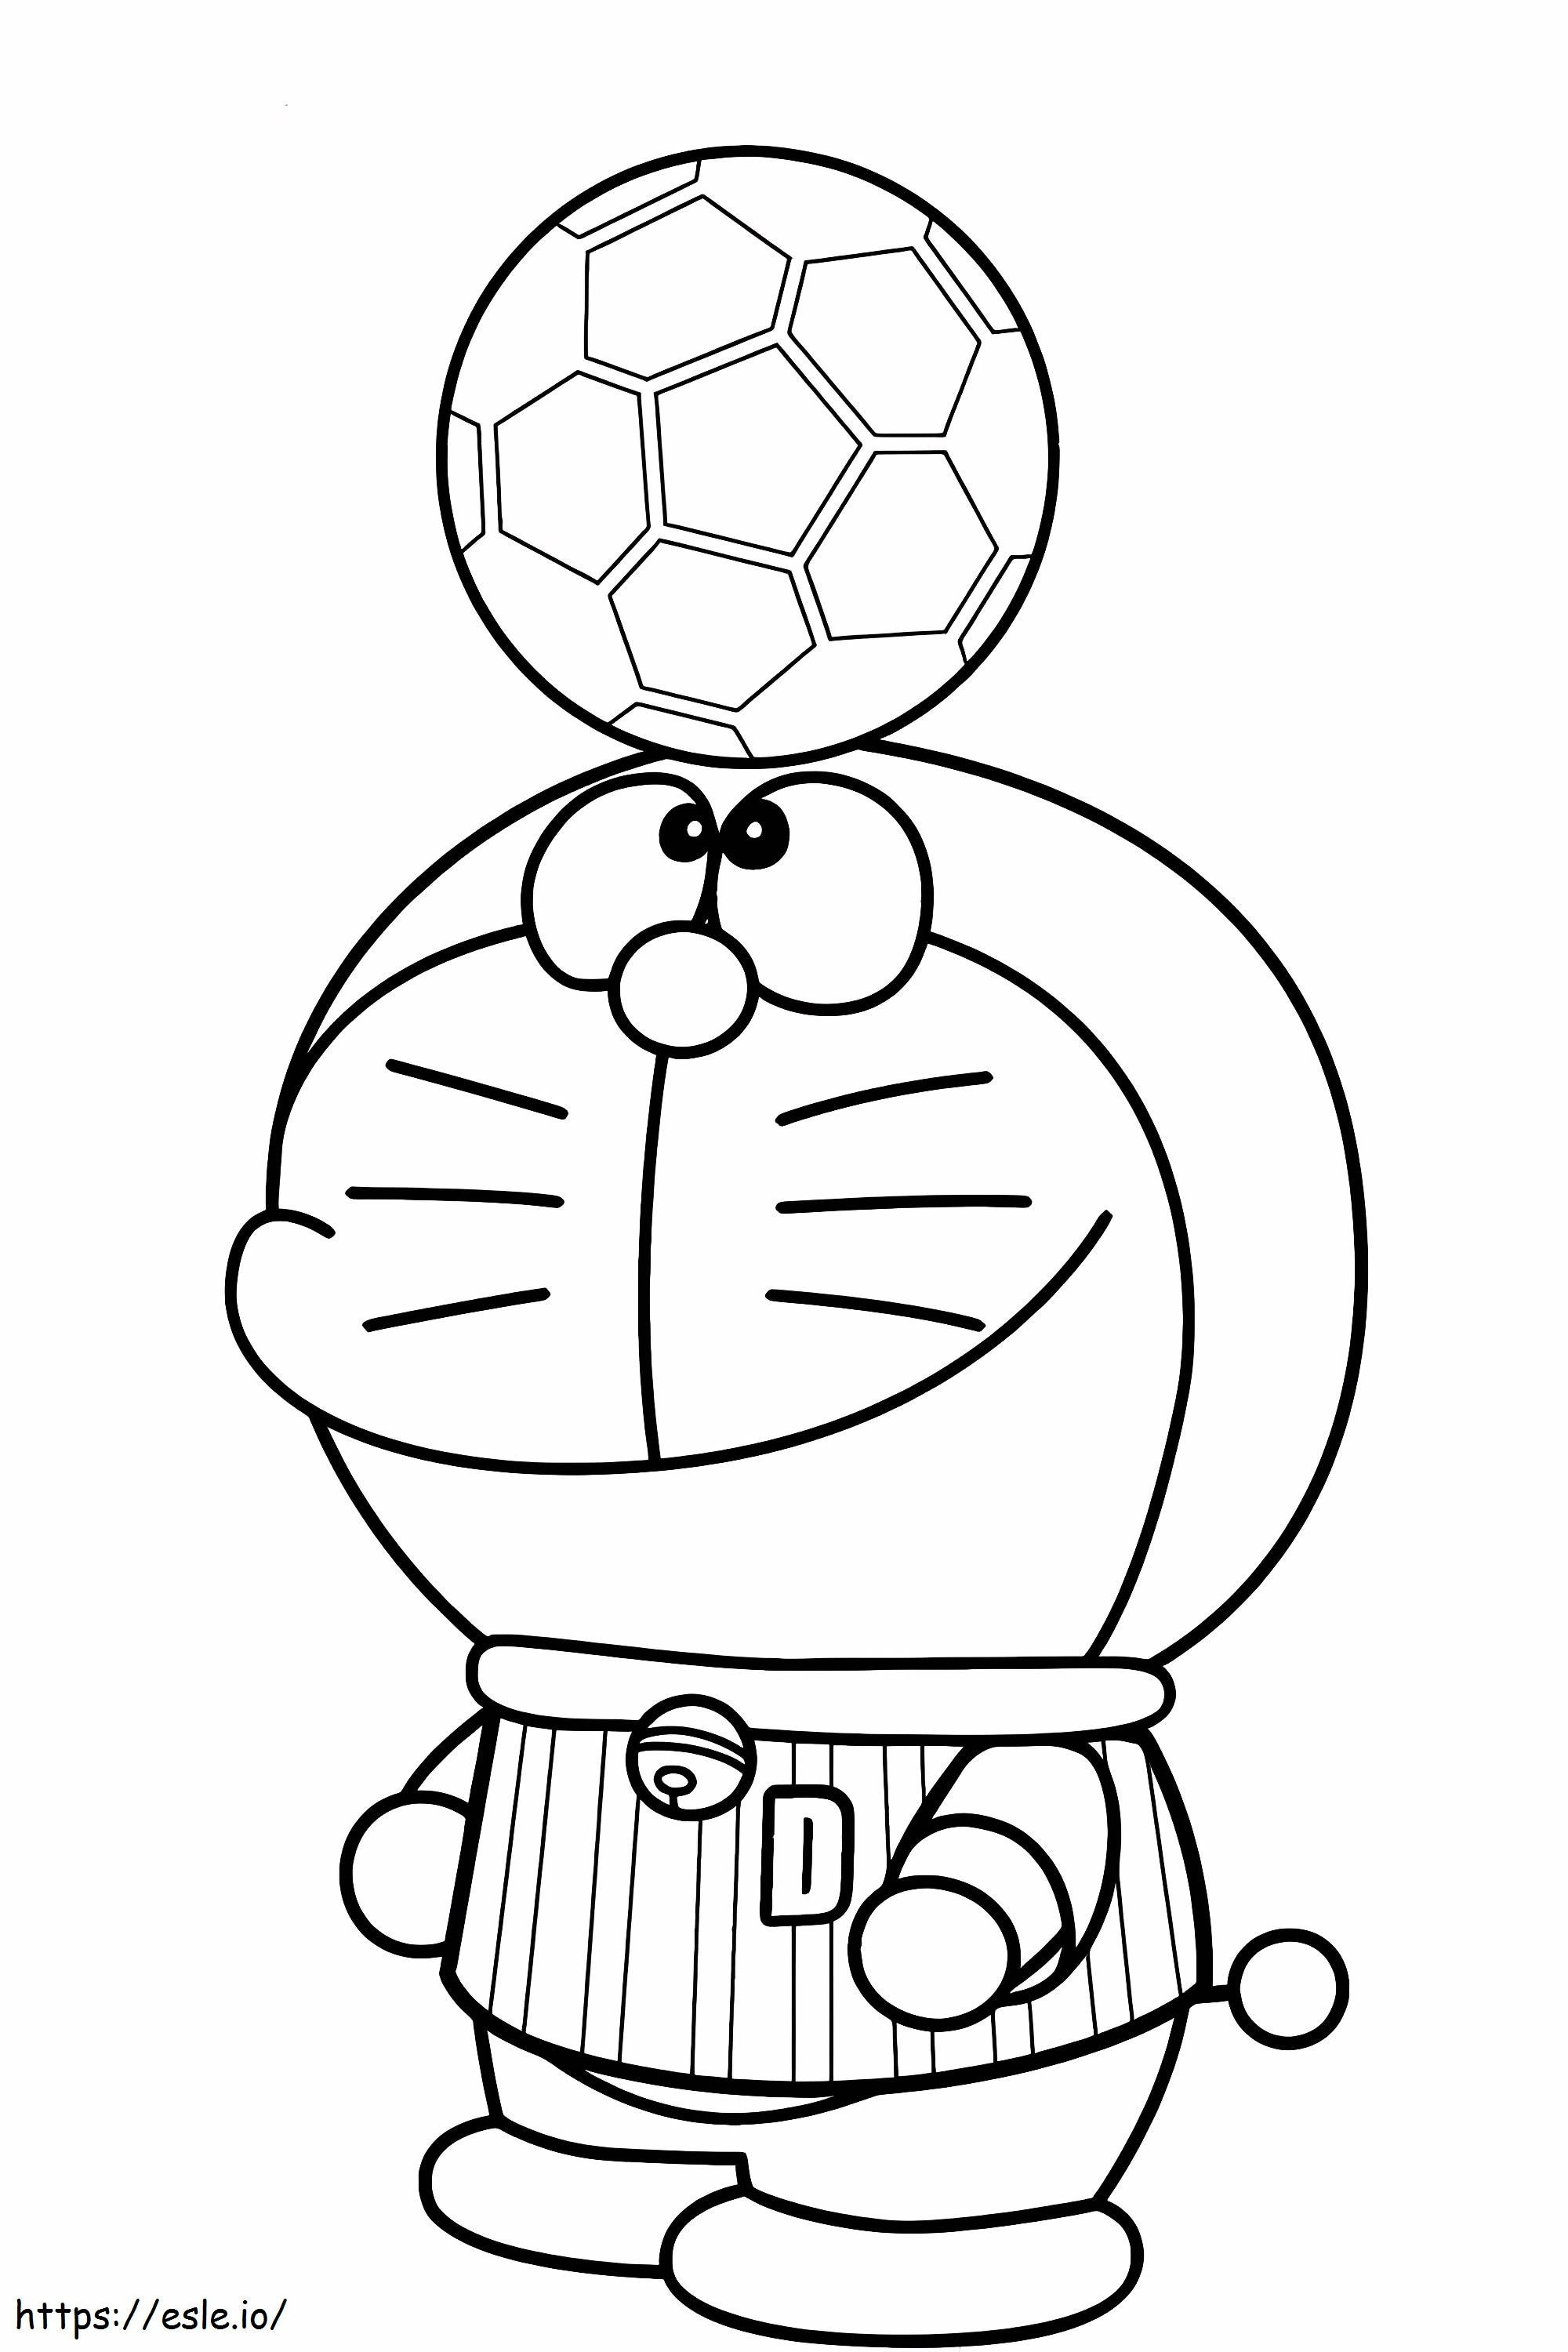 1540782584_Futbolu Seviyorum Güzel Doraemon Boyama Sayfaları Çizgi Sihirbazı Doraemon Futbolu Seviyorum boyama